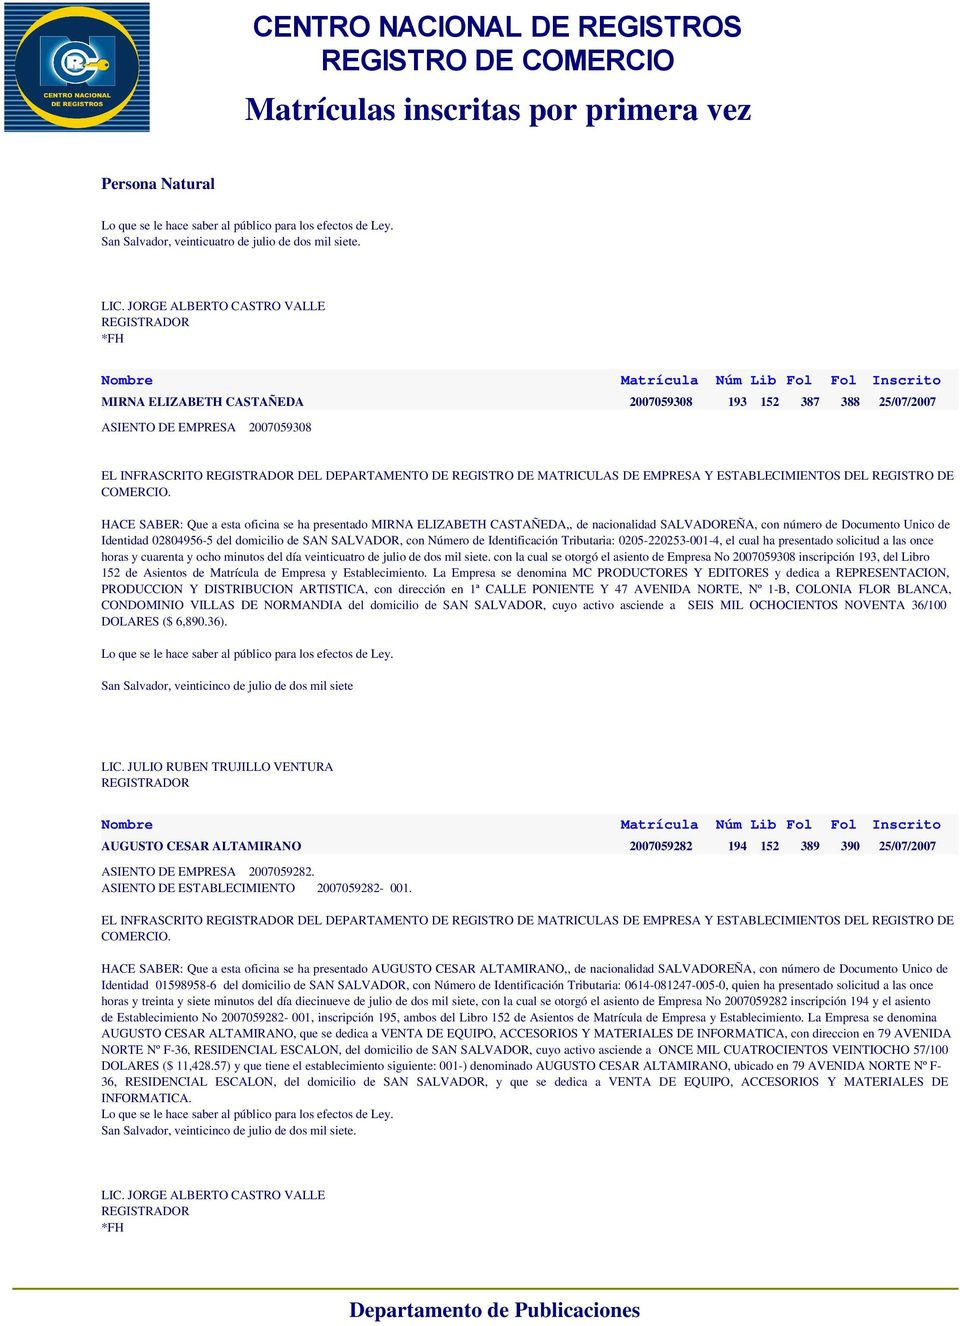 SALVADOREÑA, con número de Documento Unico de Identidad 02804956-5 del domicilio de SAN SALVADOR, con Número de Identificación Tributaria: 0205-220253-001-4, el cual ha presentado solicitud a las